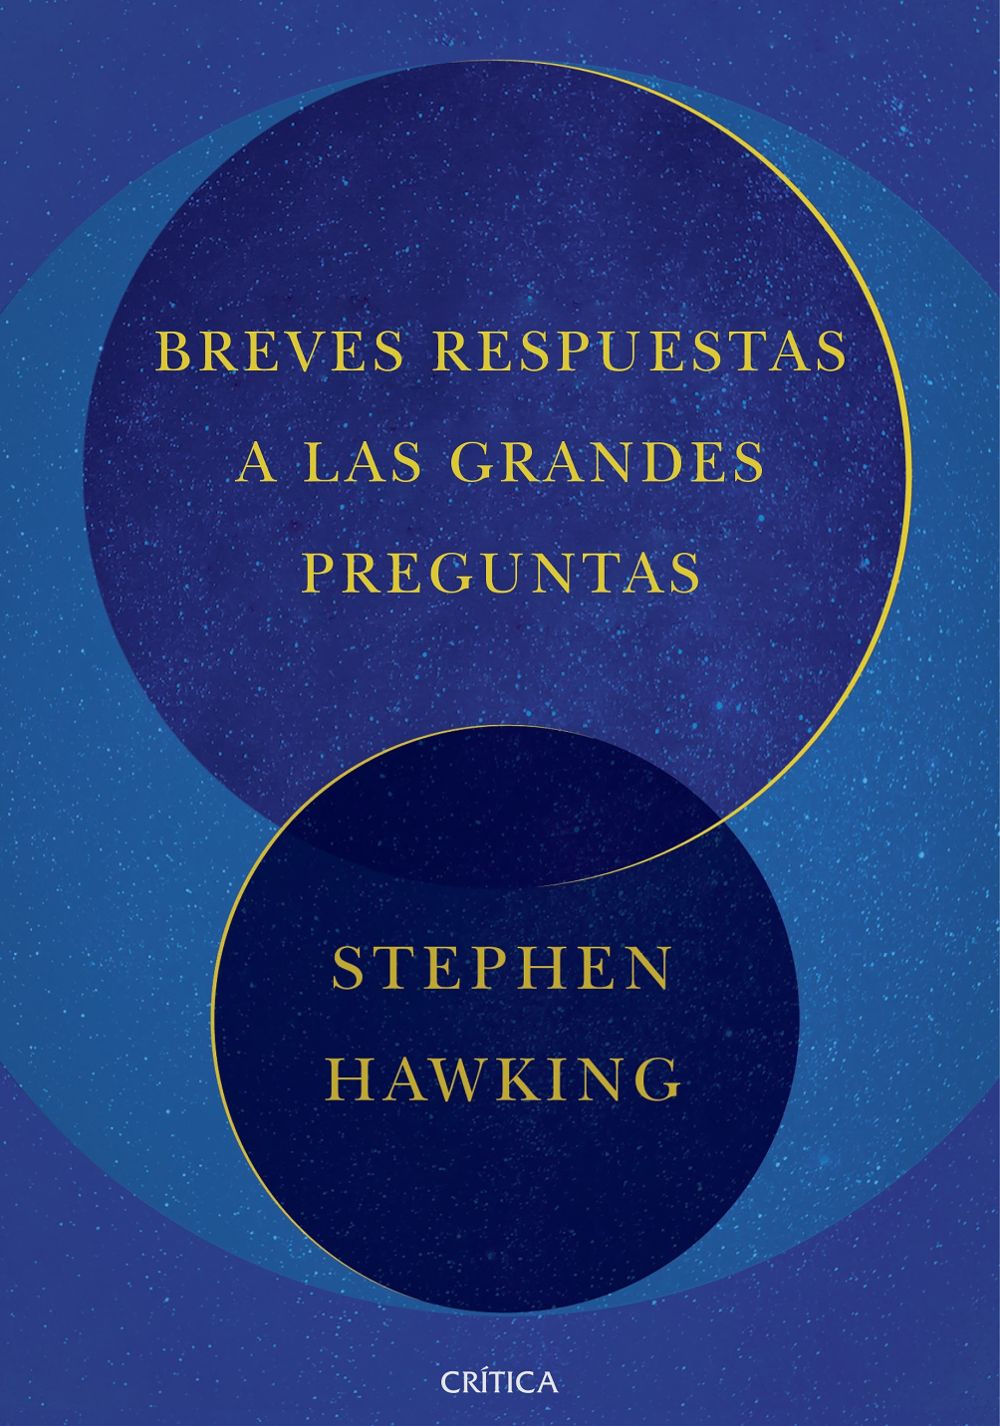 Portada de la obra póstuma de Hawking, publicada en España por Crítica.